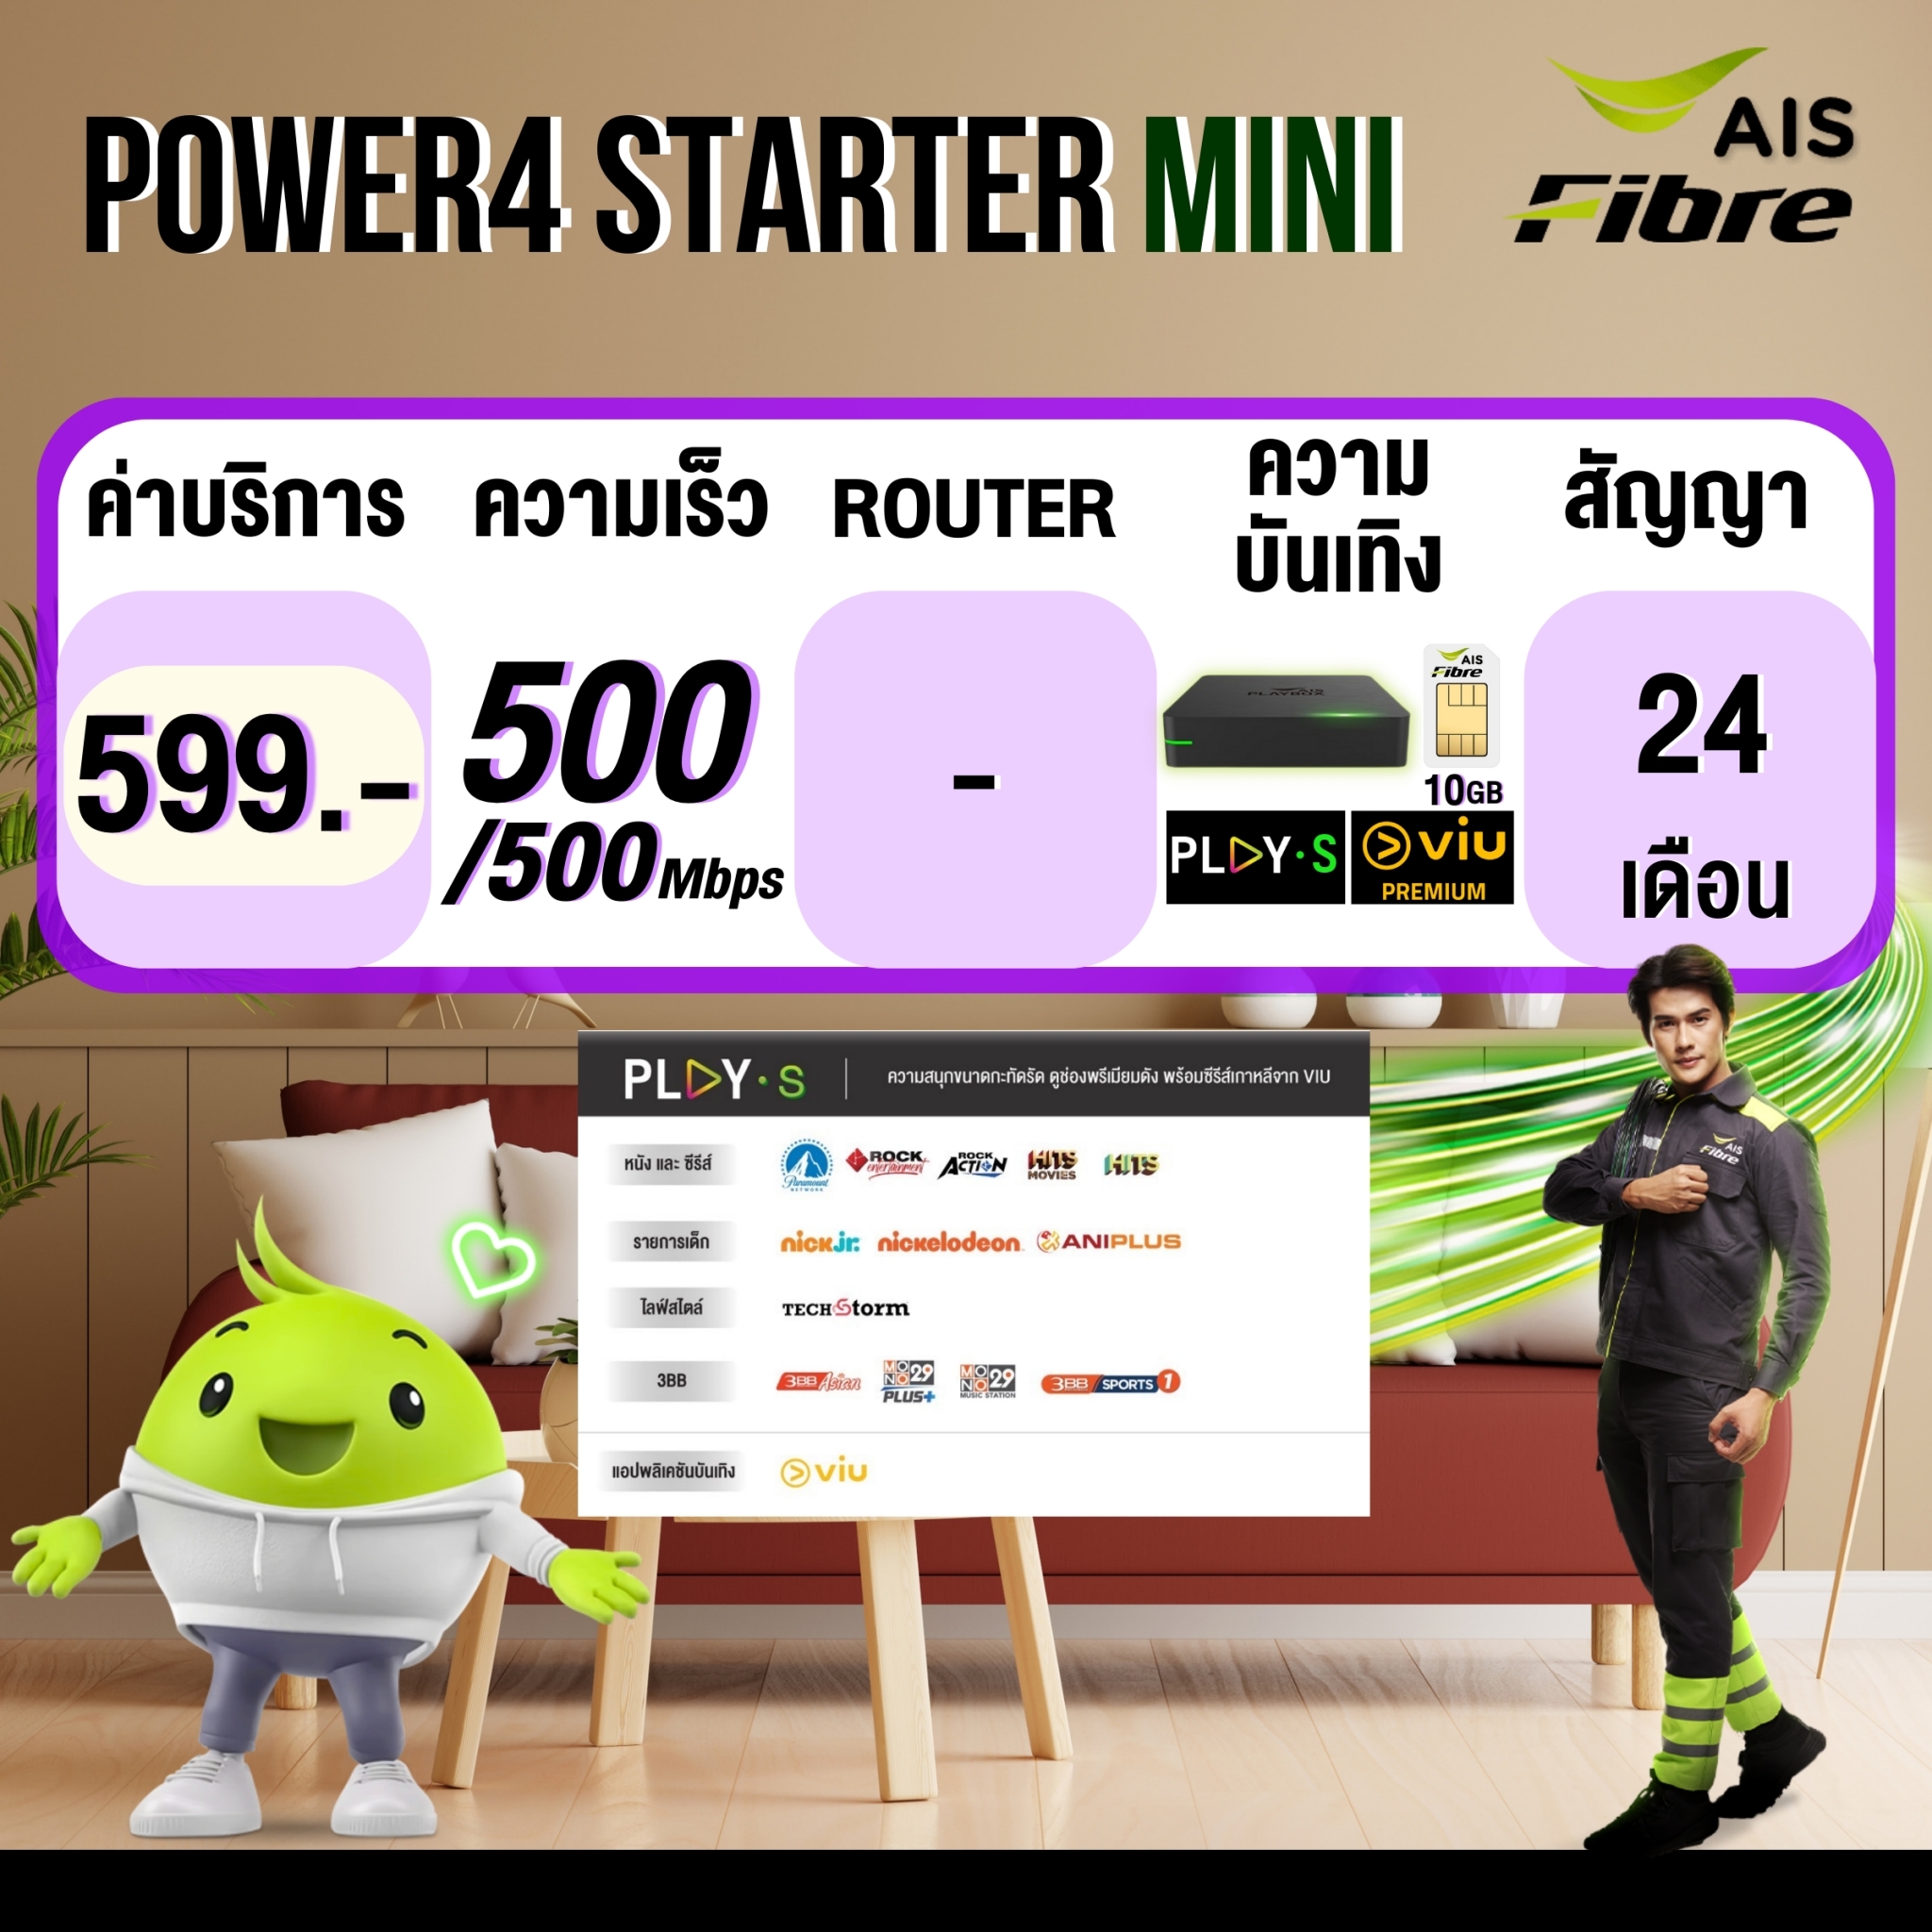 Power4Starter-mini